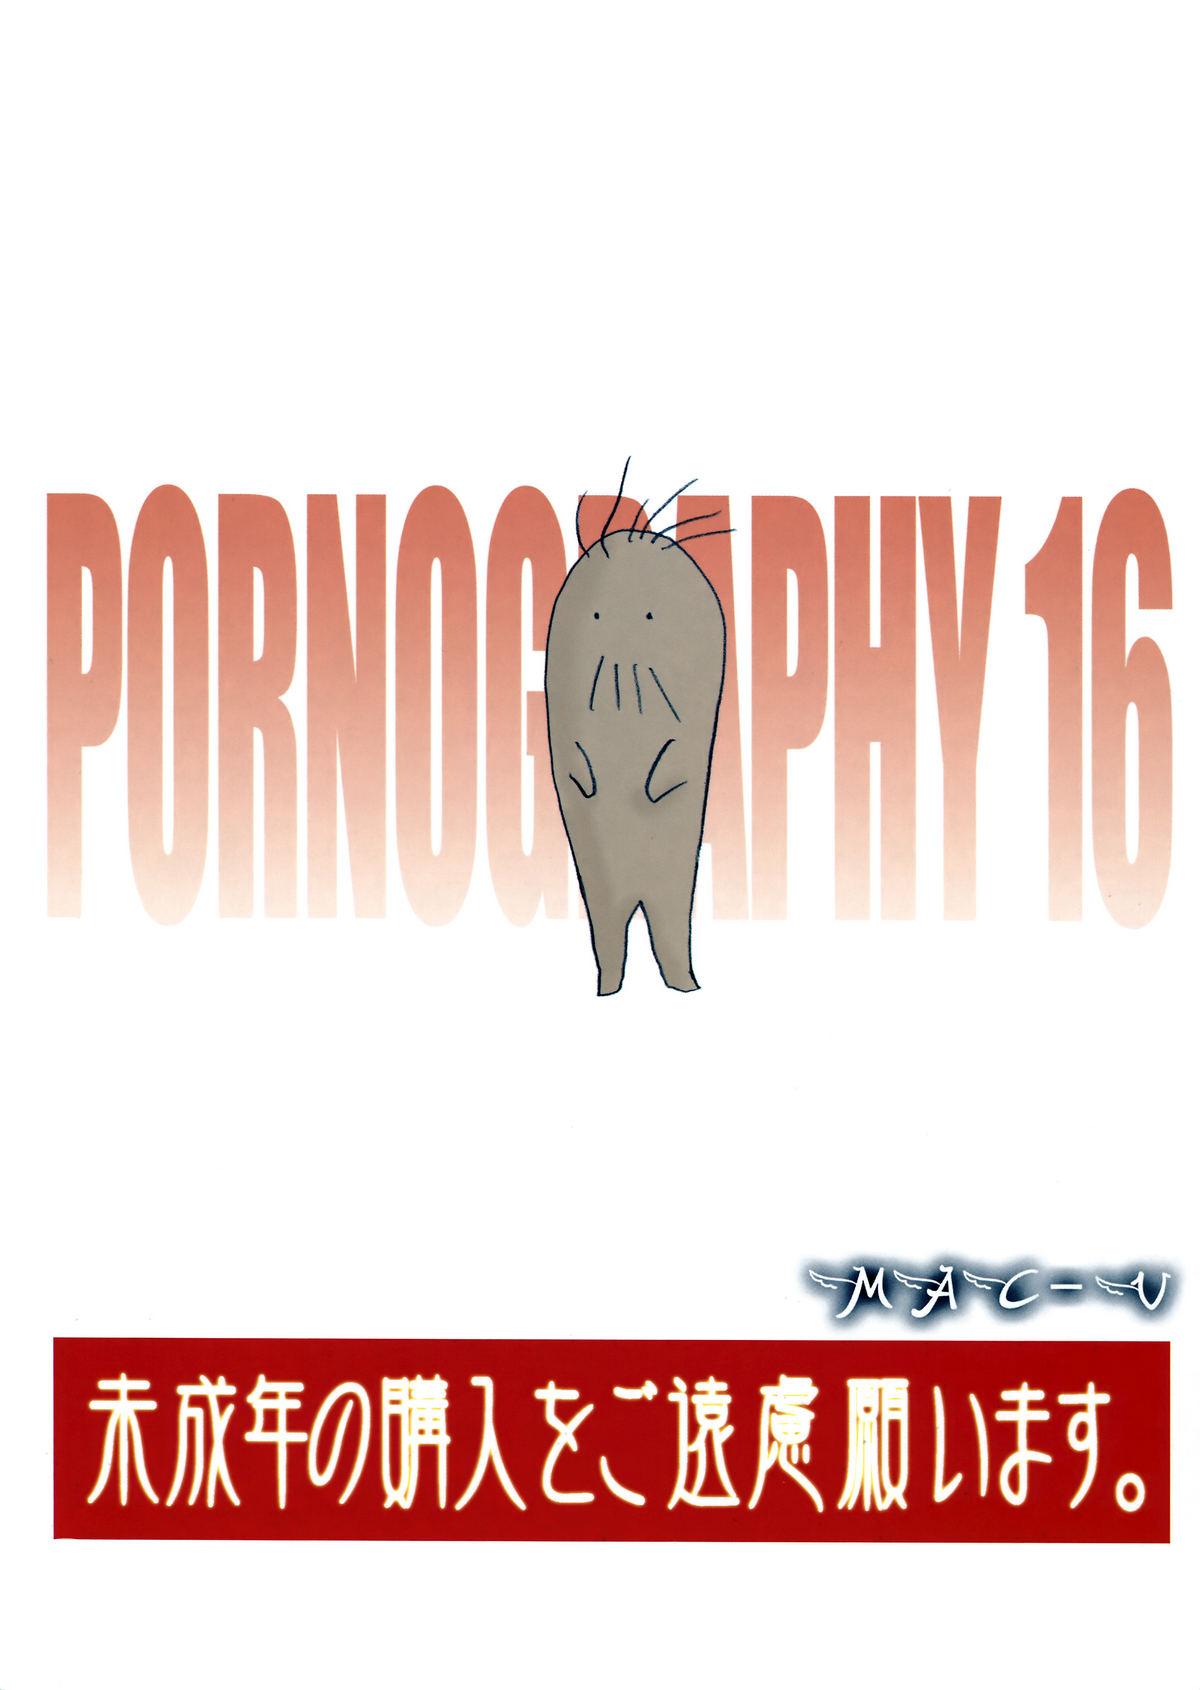 PORNOGRAPHY 16 1